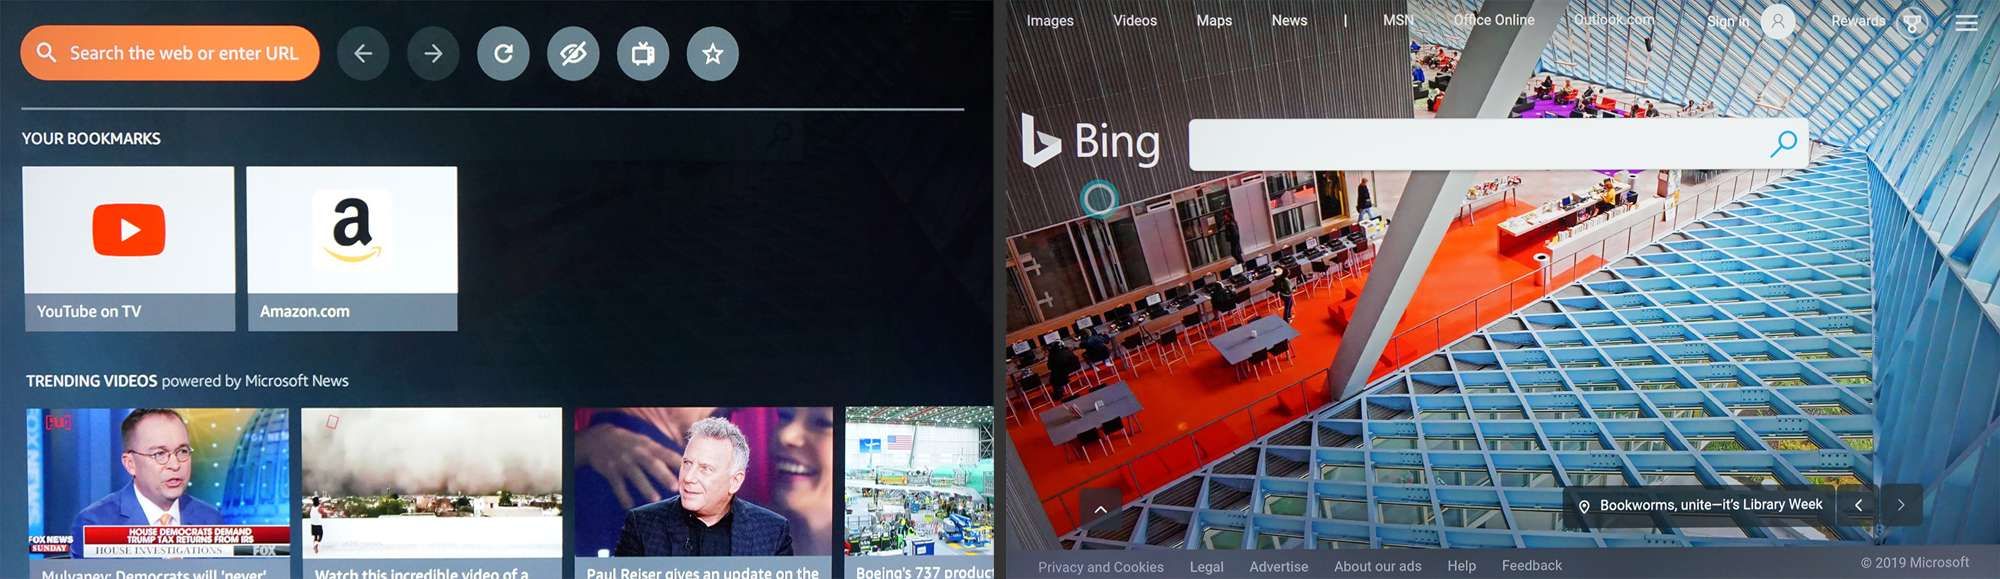 Fire TV - шелковый веб-браузер с поиском Bing